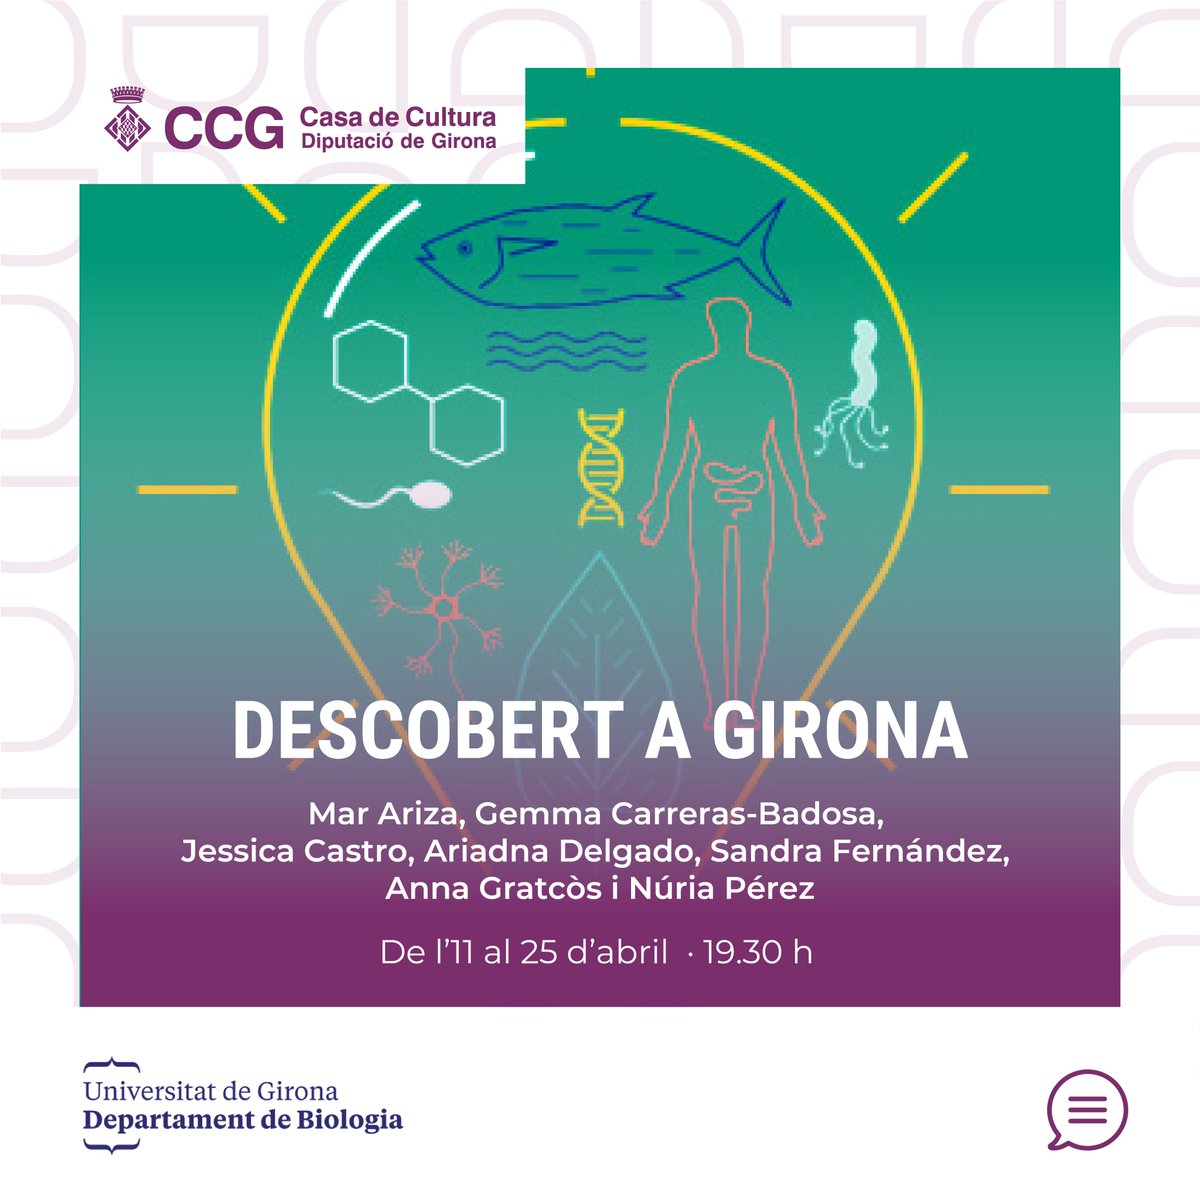 💡El cicle de divulgació científica «Descobert a Girona» té com a objectiu principal apropar la recerca del Departament de Biologia de la @univgirona 👉tuit.cat/yqEjy 📆Dijous 11, 18 i 25 d'abril · 19.30 h